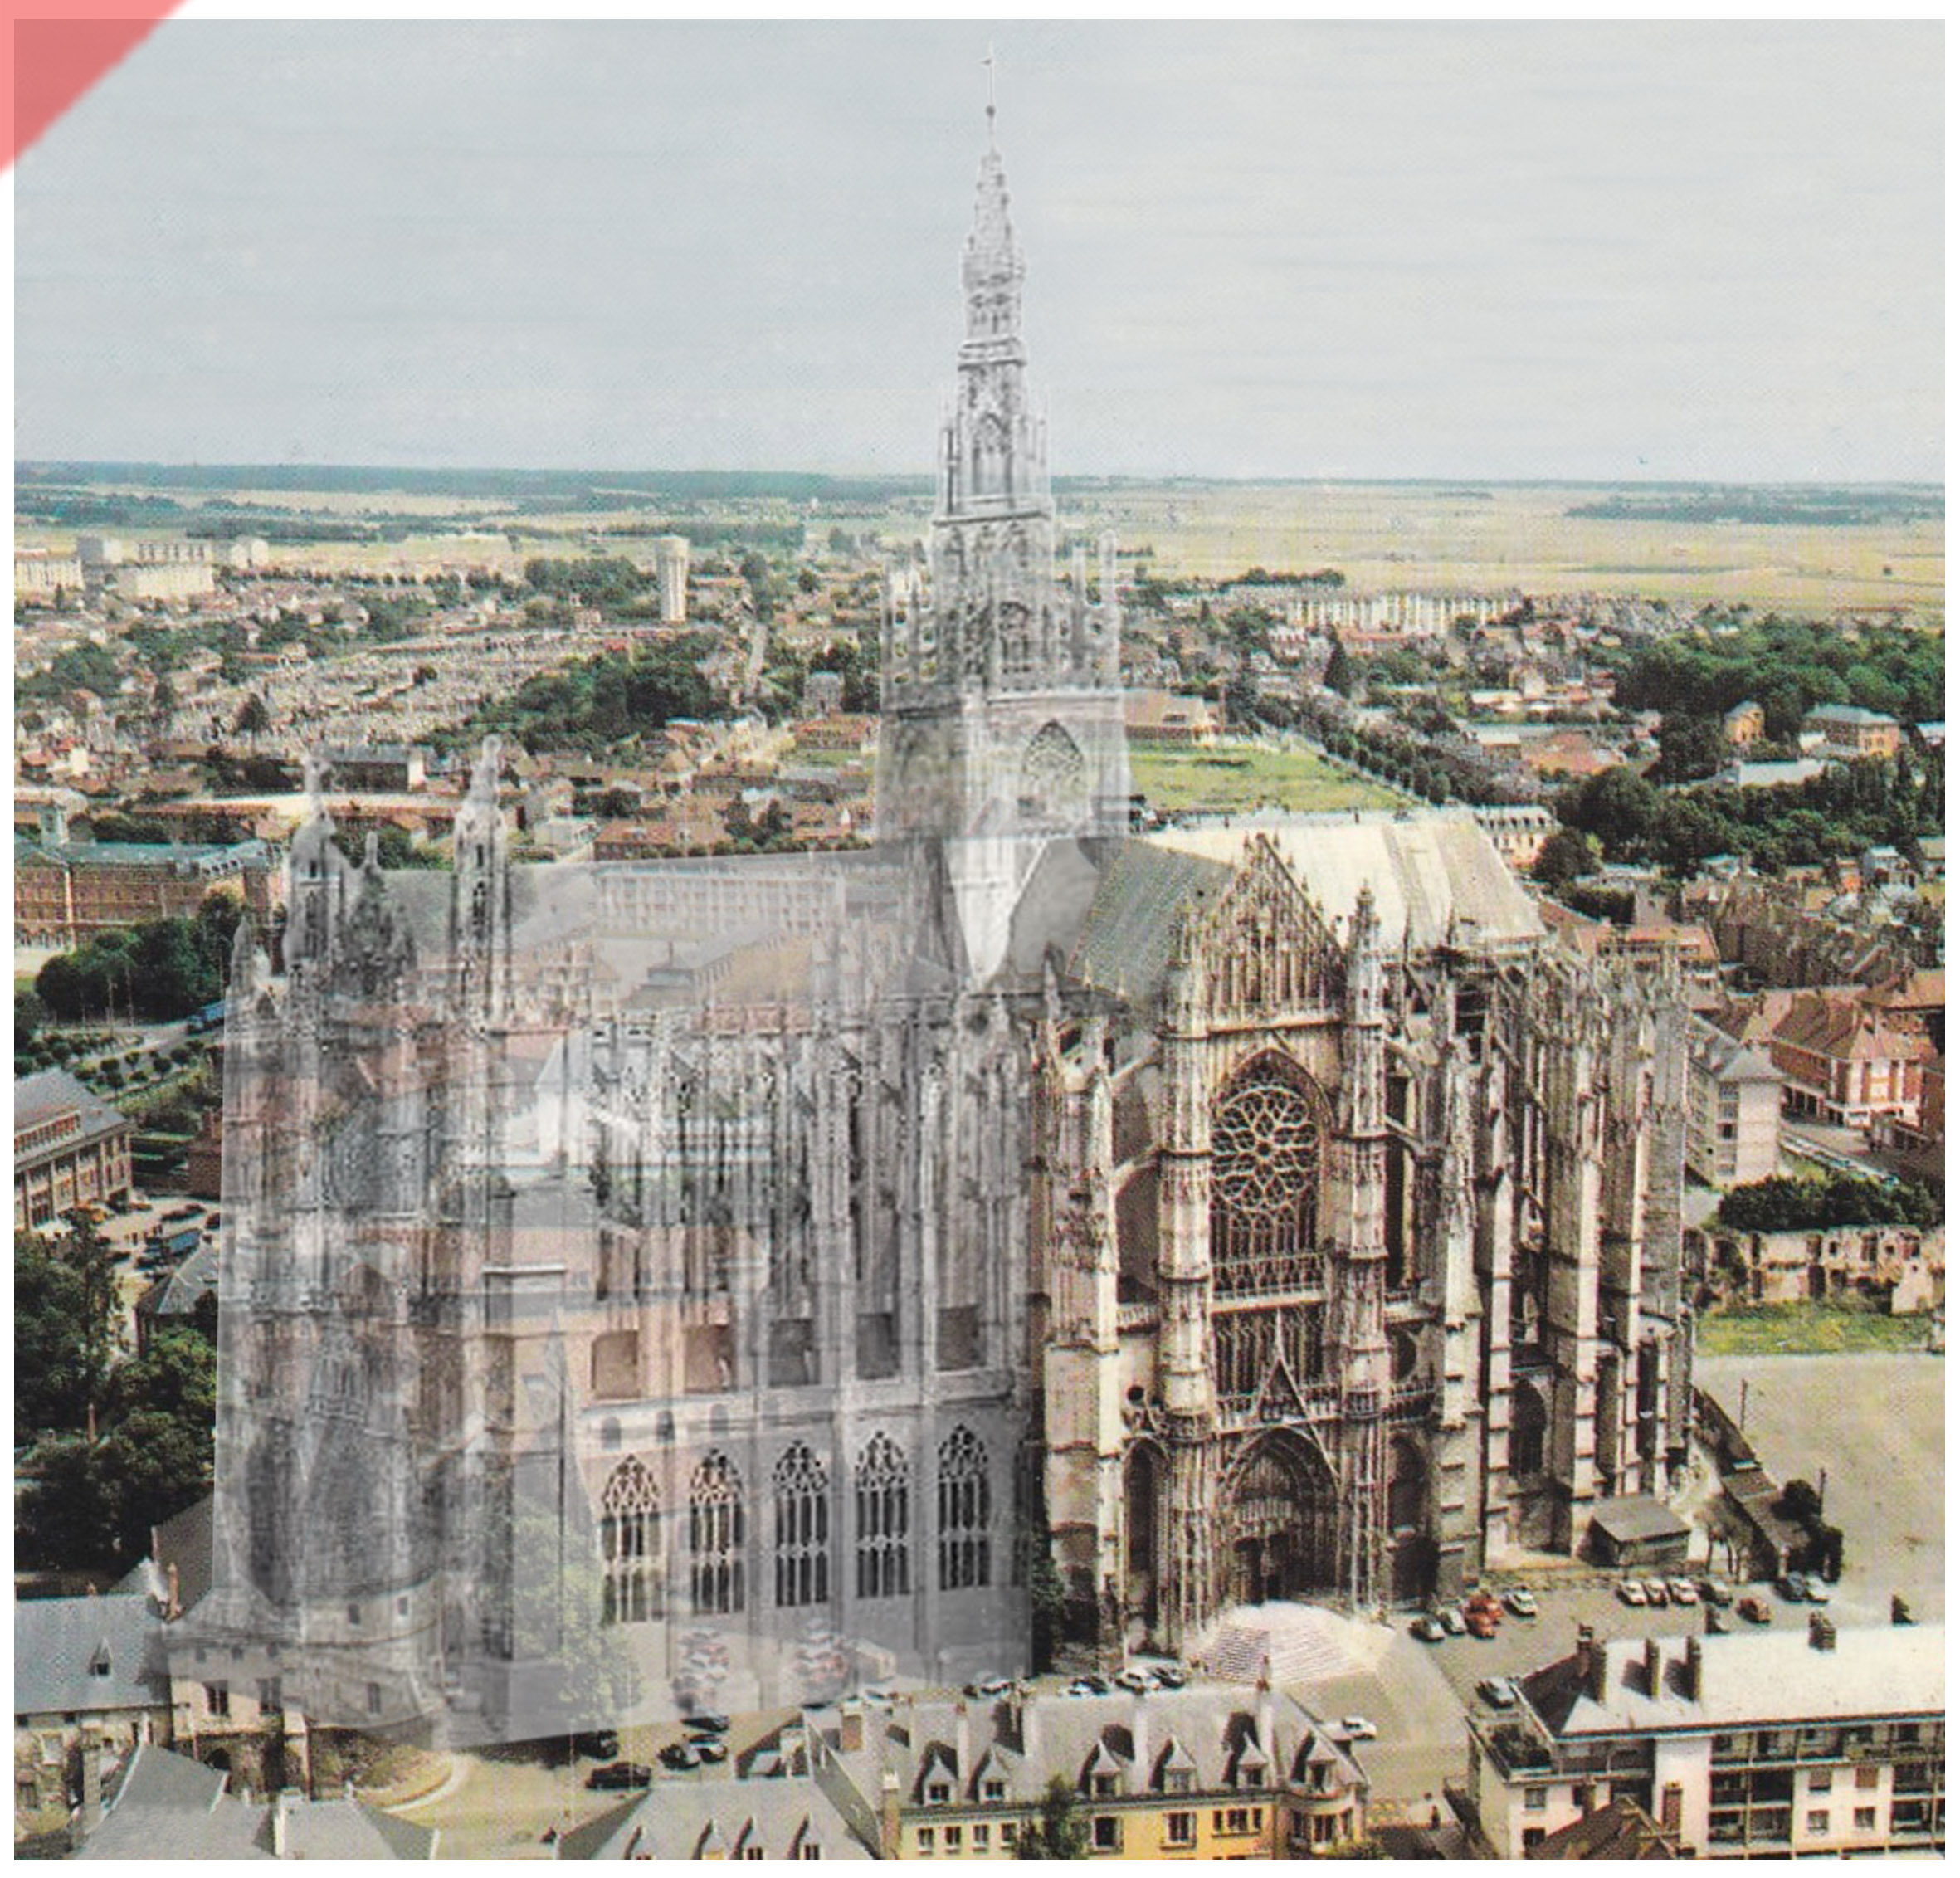 Cathédrale-Beauvais-vue-aerienne-façade-sud-façade-prévue-tour-1573-église-planifiée-Cathedrale-Beauvais-aerial-view-south-façade-geplante-façade-tower-1573-planned-kathedrale-church